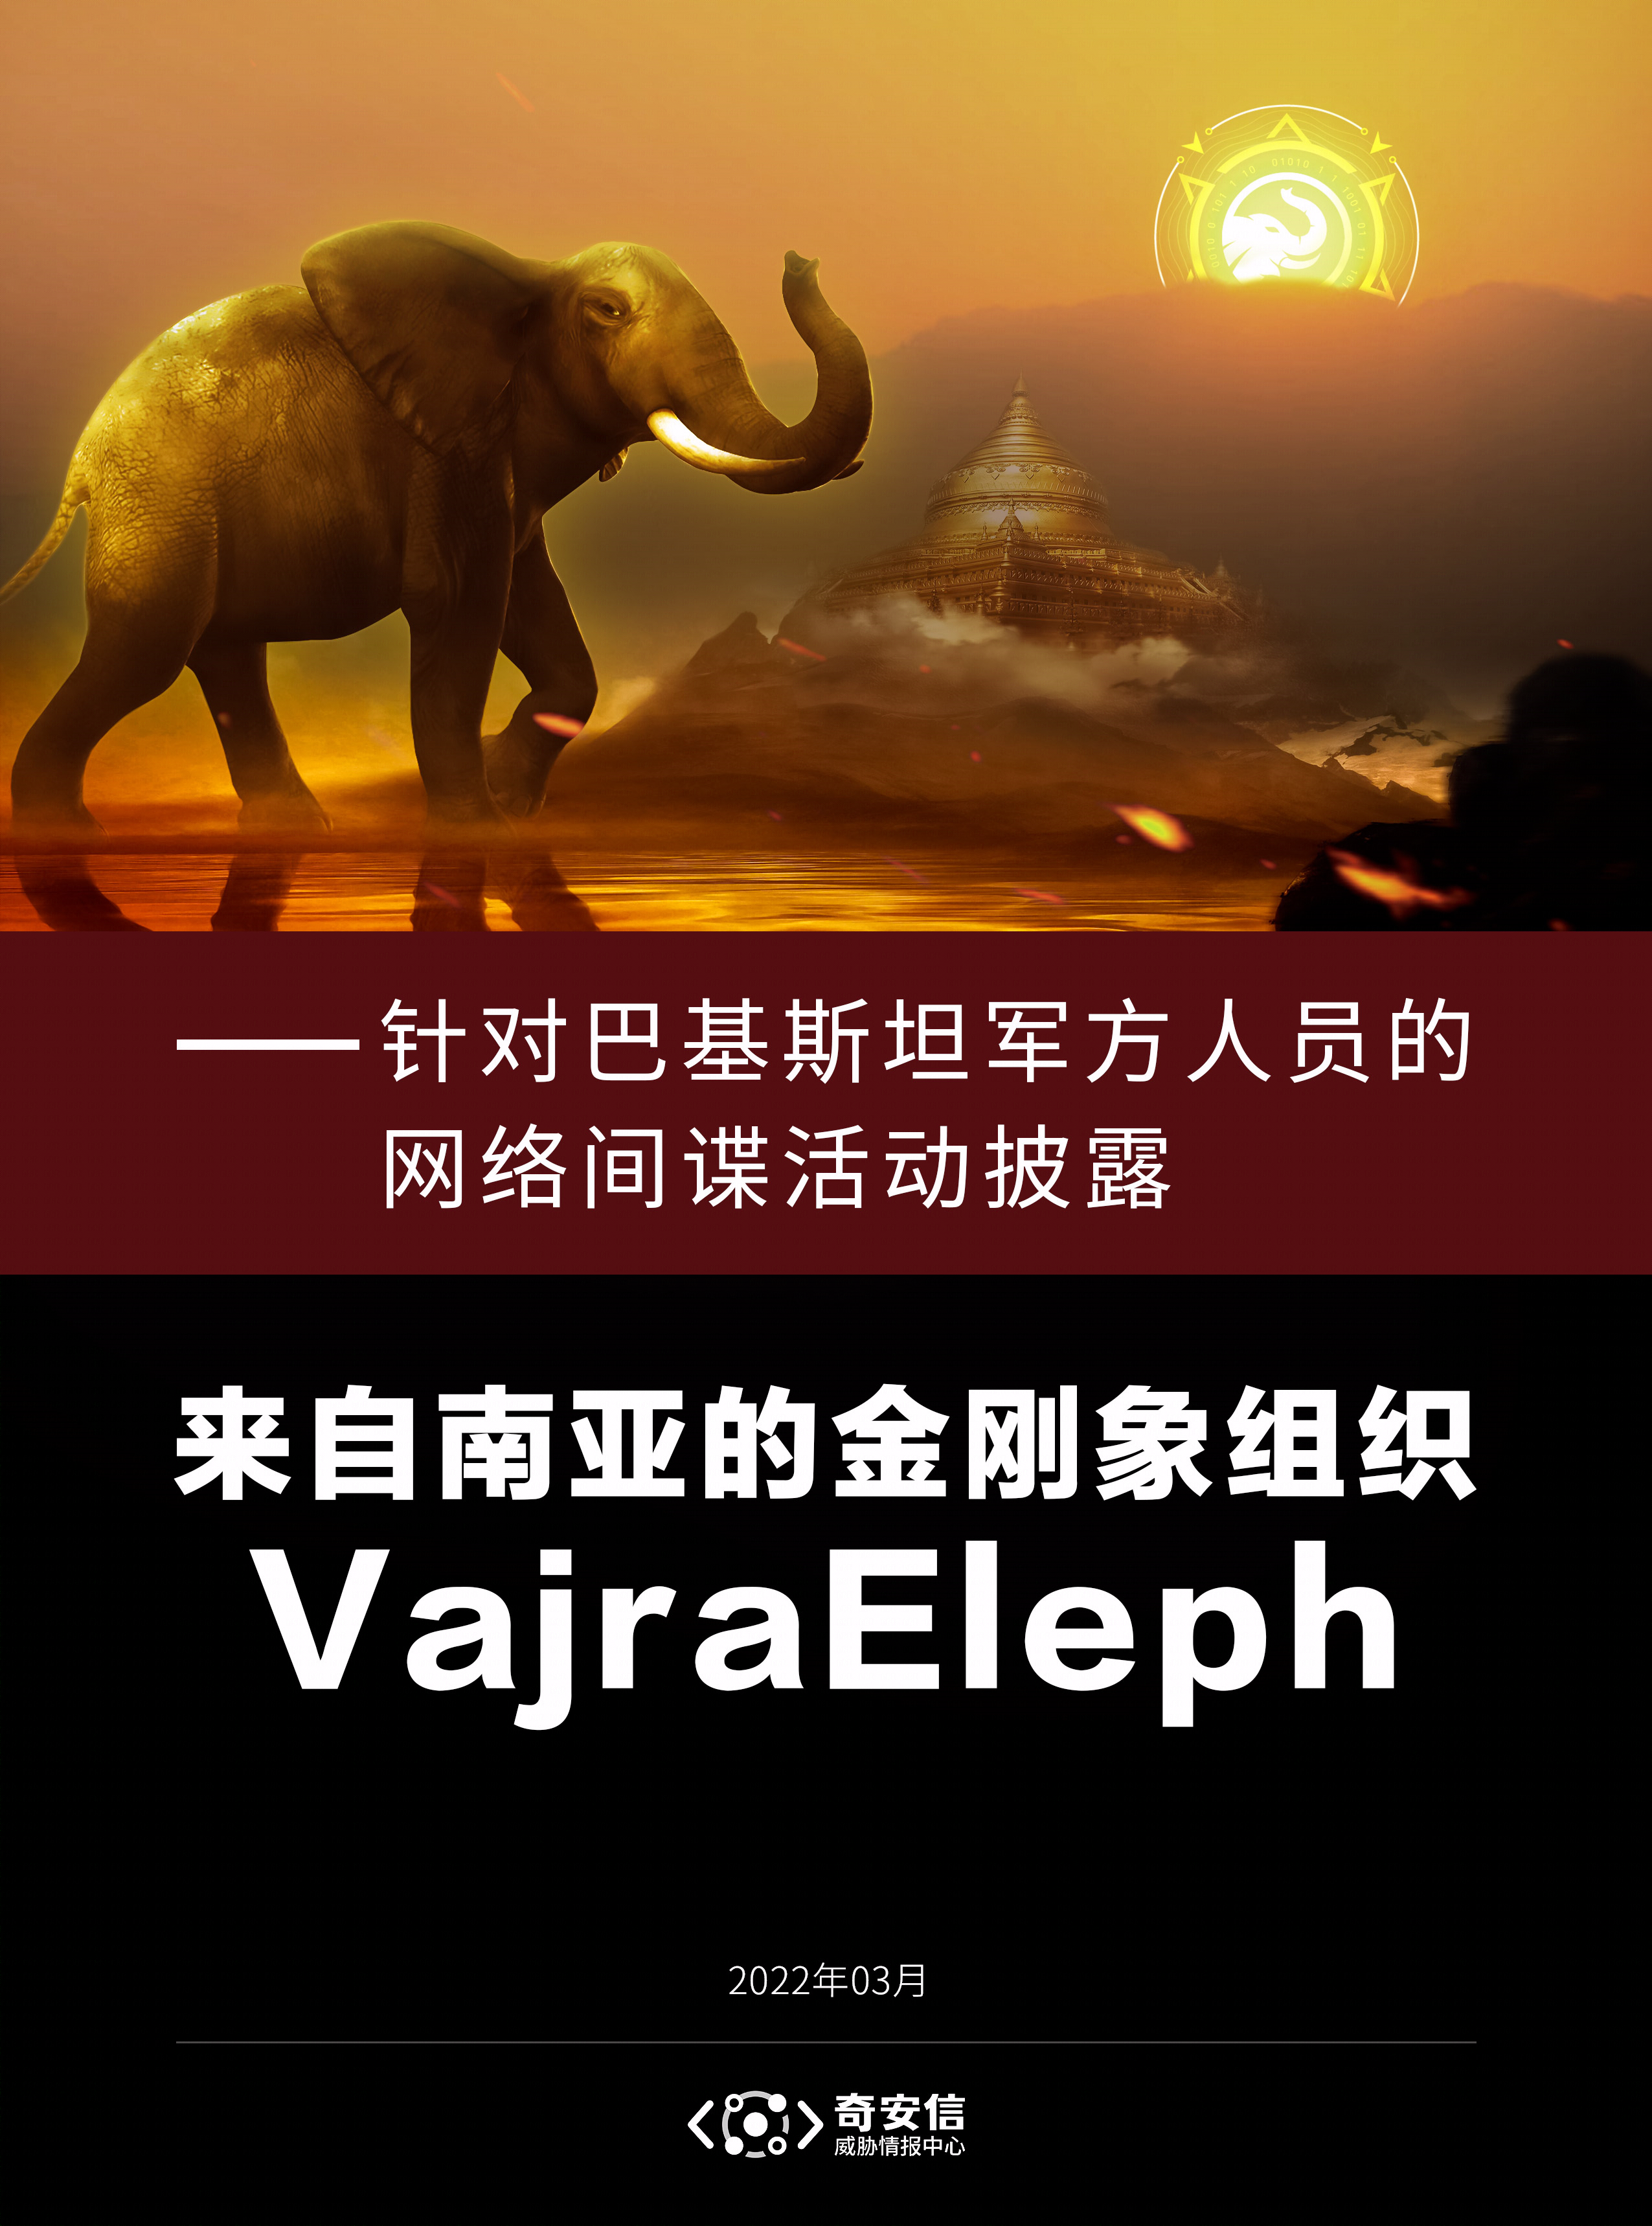 来自南亚的金刚象组织VajraEleph